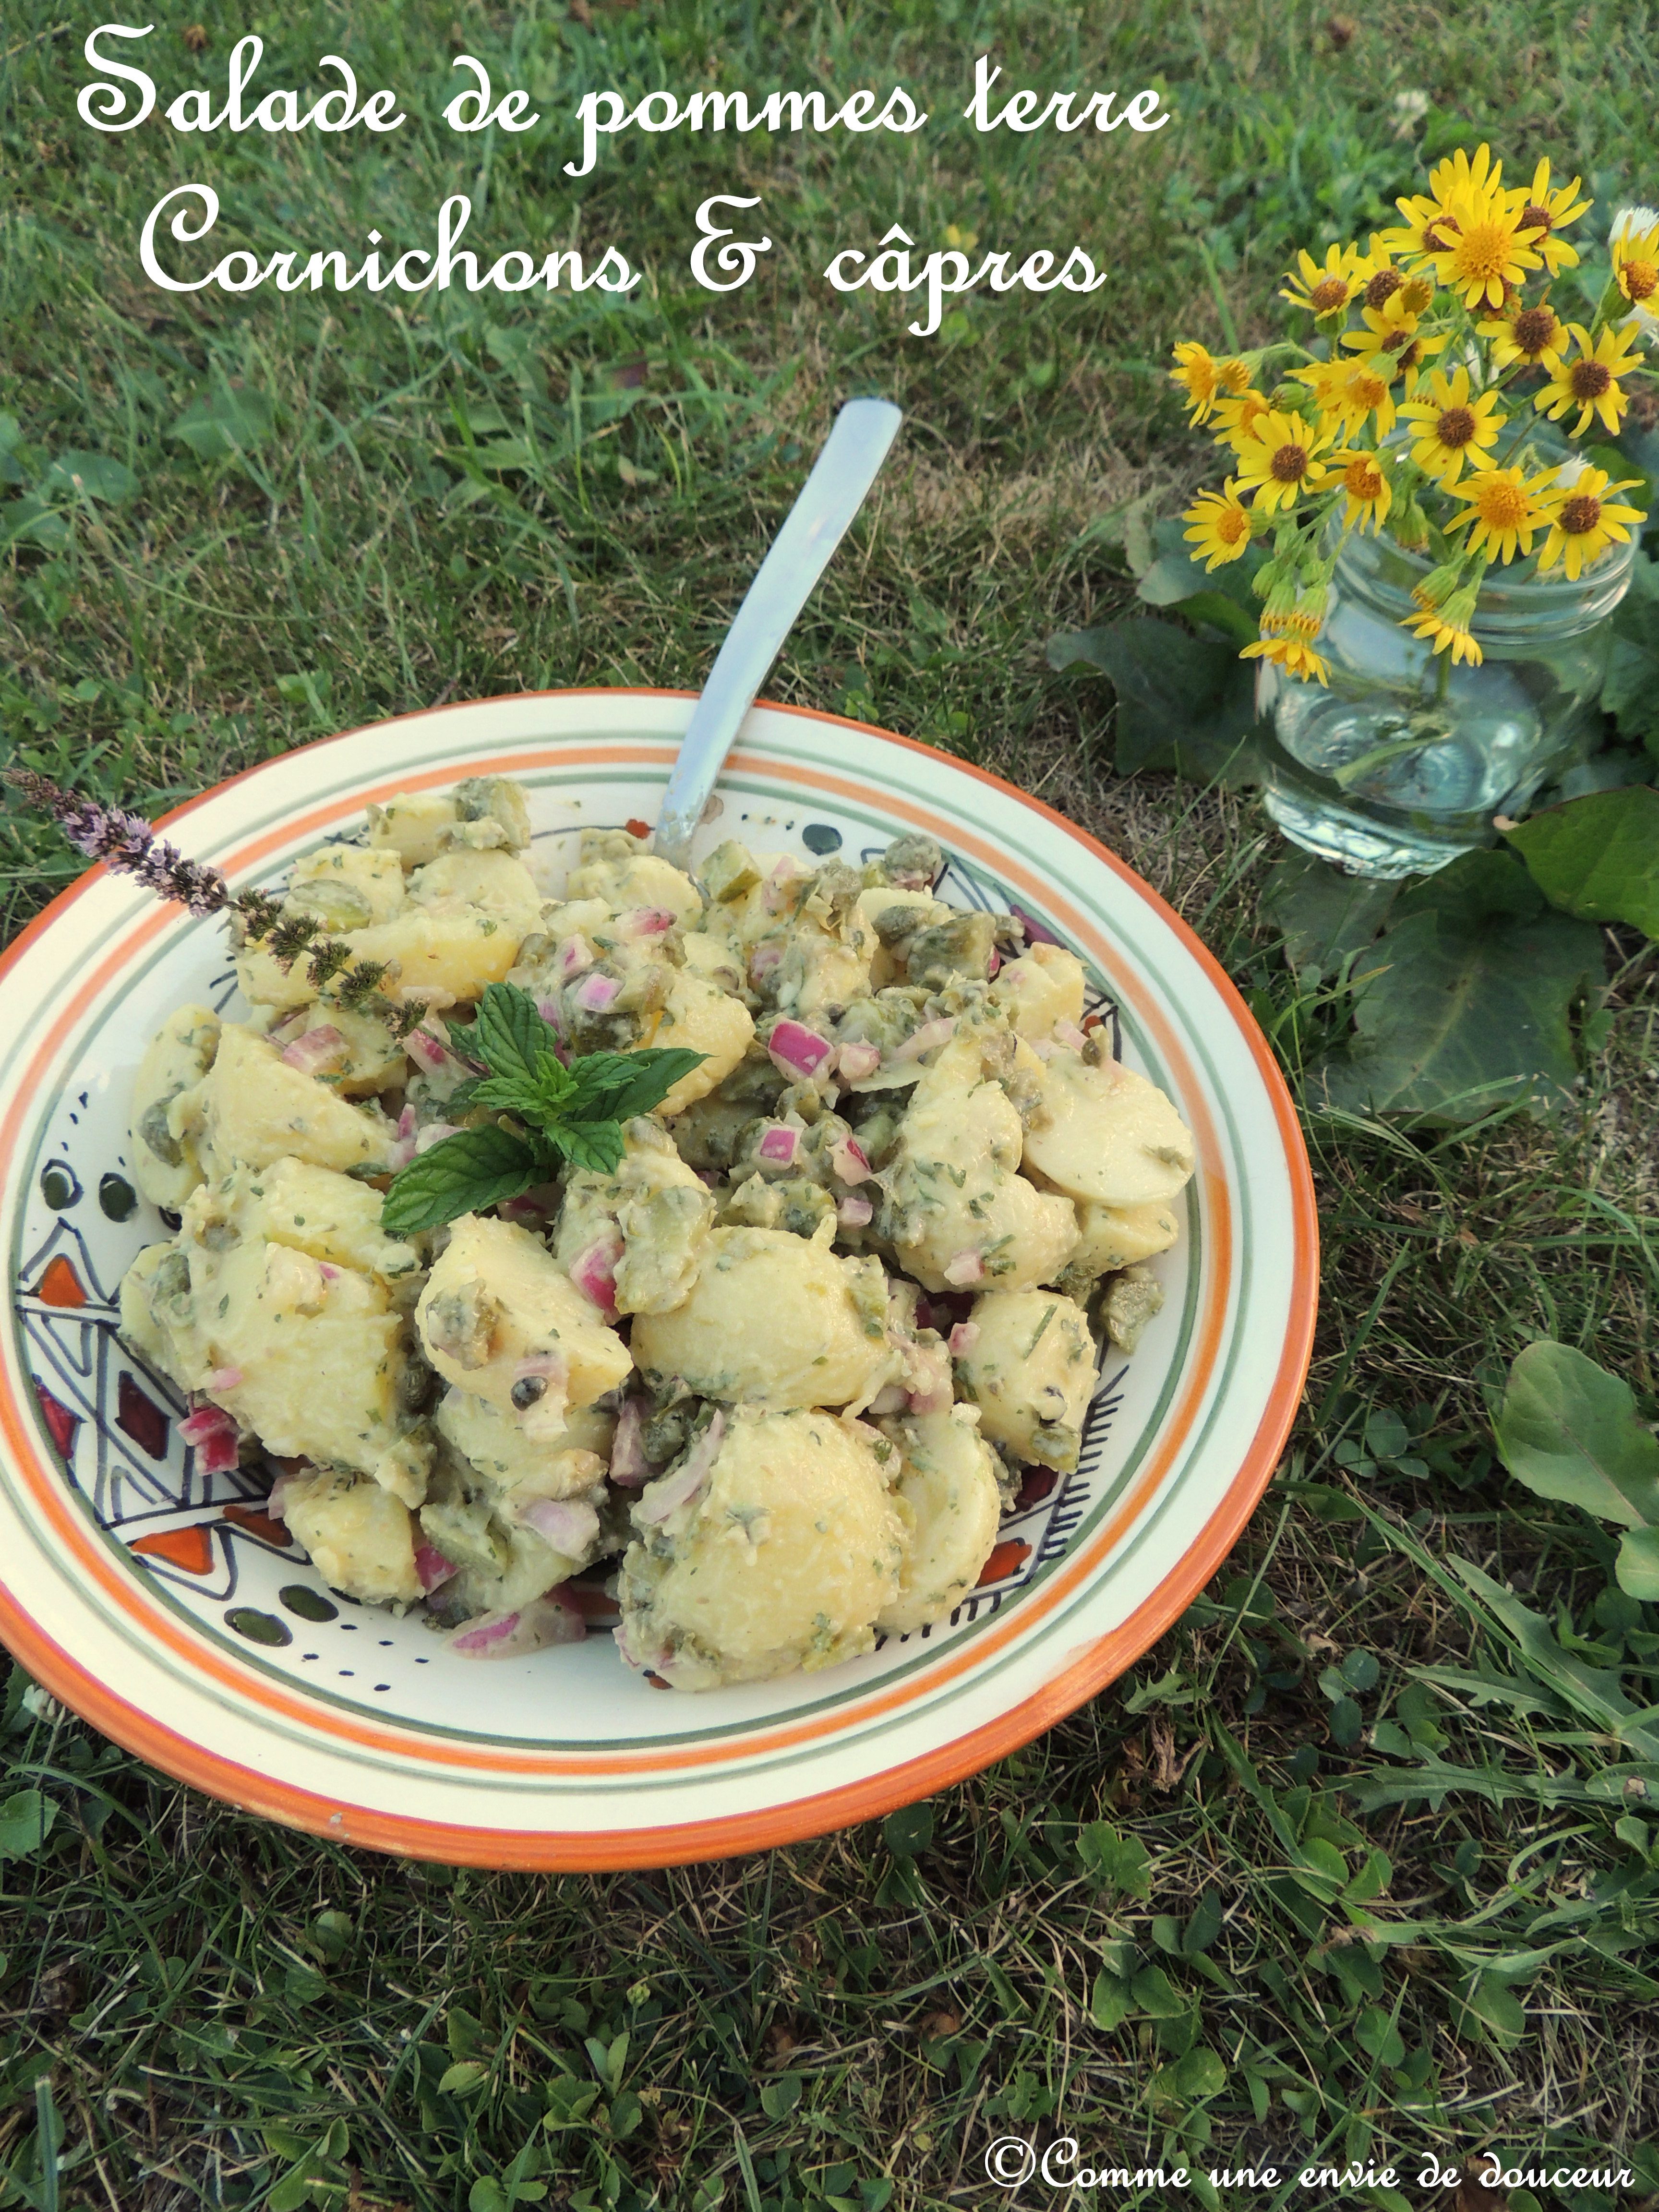  Salade de pommes de terre câpres & cornichons 